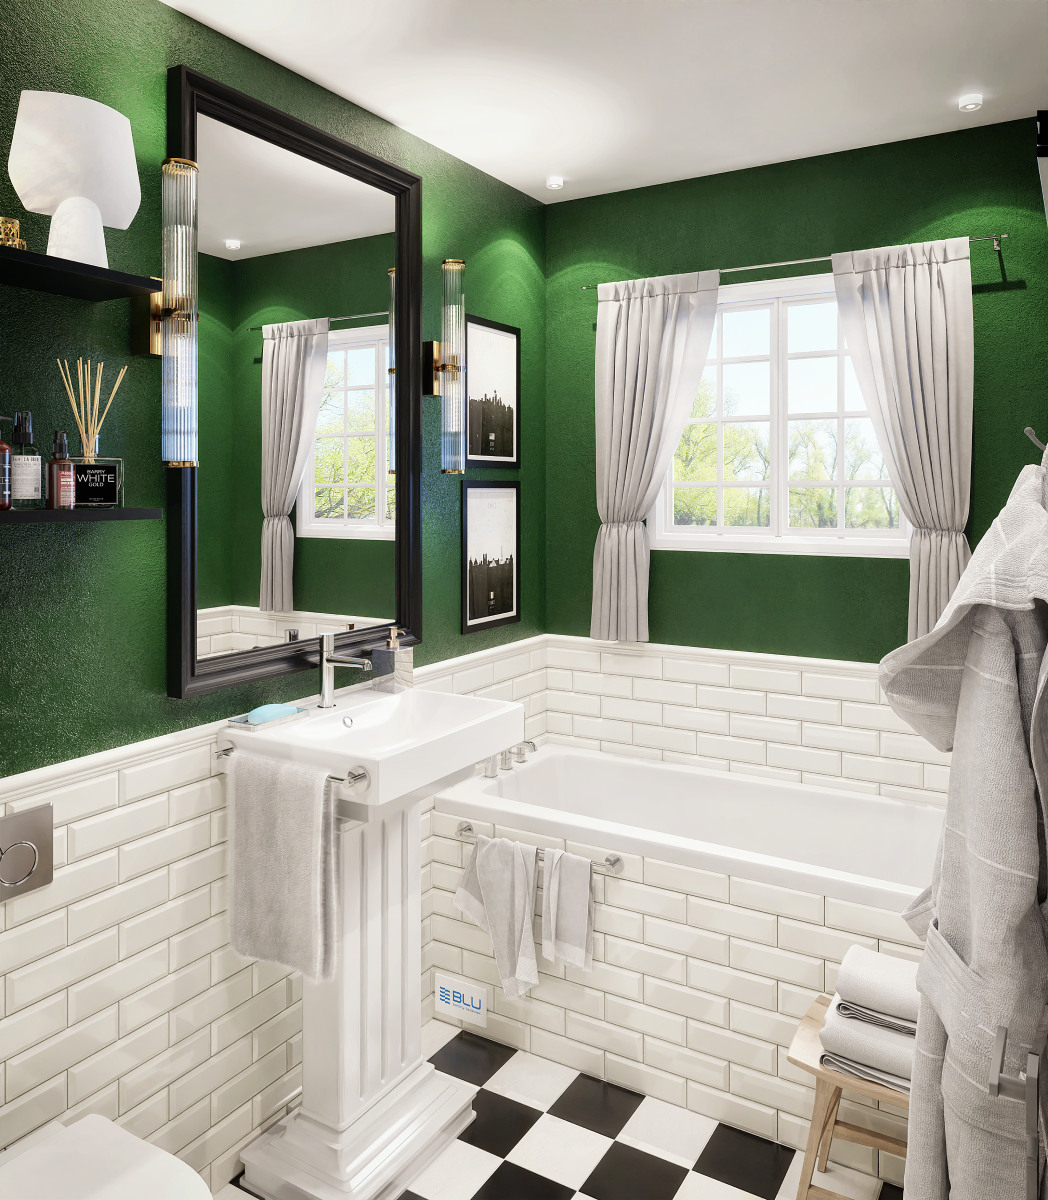 Biało zielona łazienka w stylu vintage.